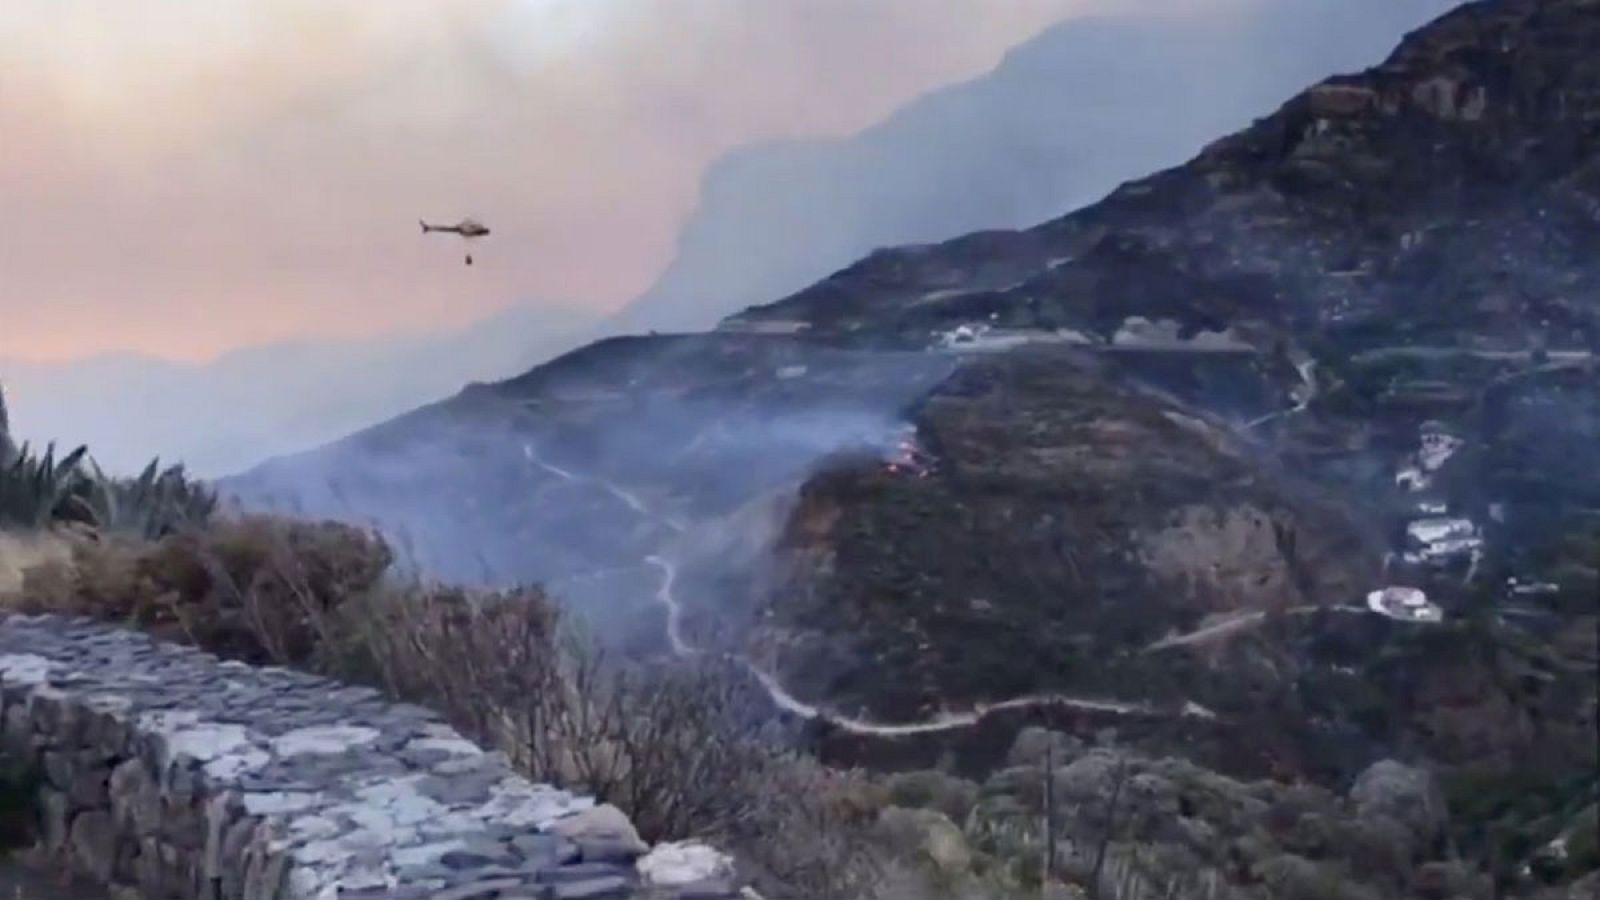 El incendio declarado en la cumbre de Gran Canaria sigue fuera de control y la zona afectada ha aumentado de 1.000 a 1.500 hectáreas. Durante la pasada noche se registraron rachas de viento de 70 kilómetros por hora que dificultaron que se pudiese co